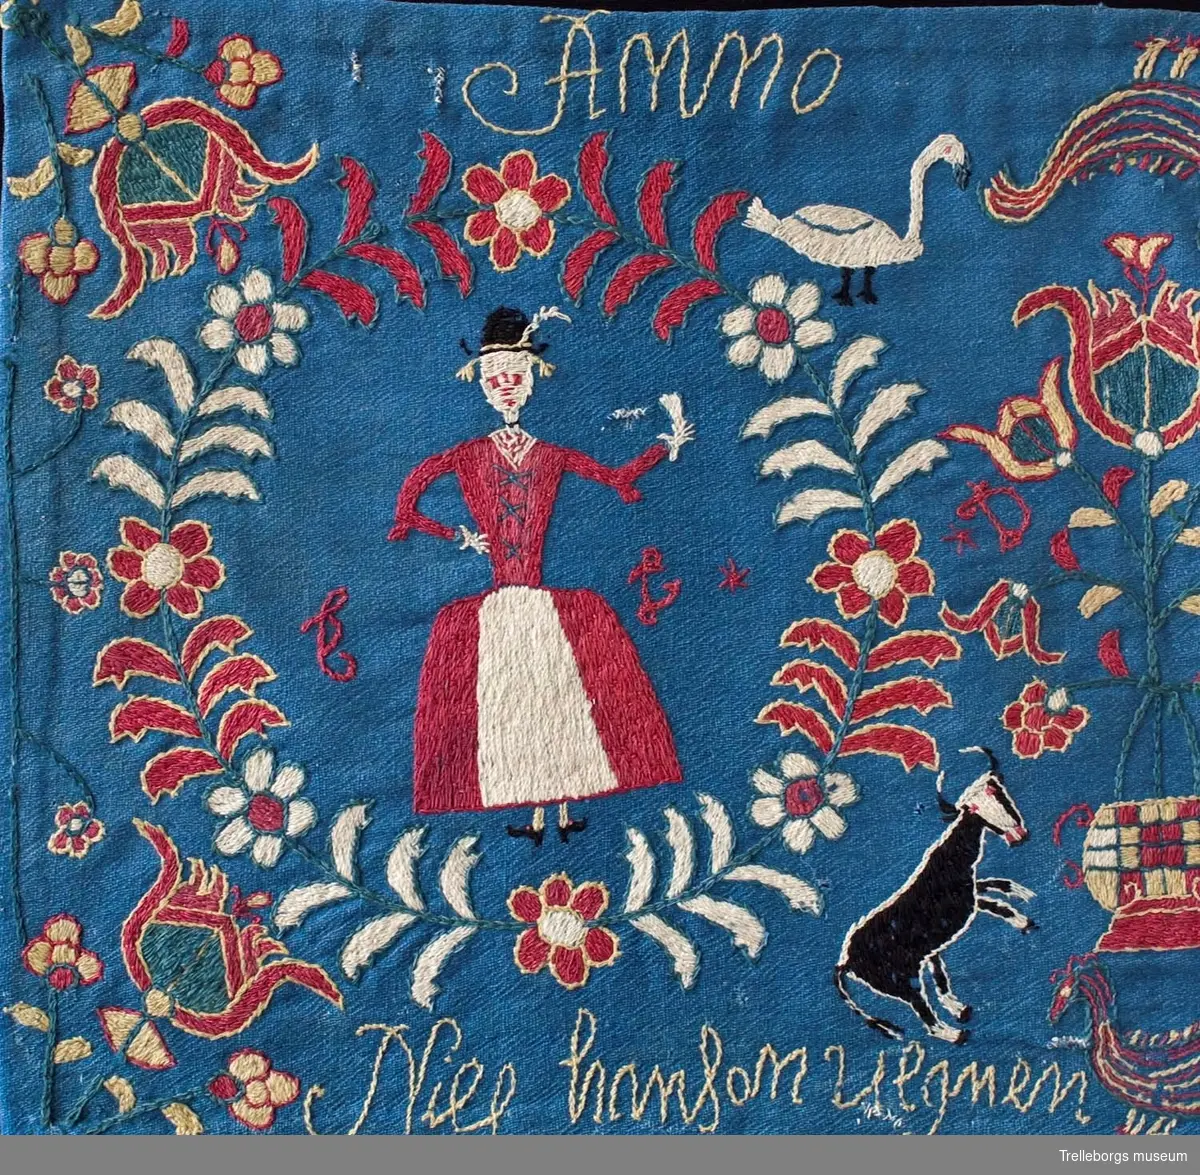 På en mellanblå botten är två kransar broderade, i den ena kransen står en kvinna och i den andra en man. I dynans hörn är blommor broderade, samma blomma kommer igen i dynans mitt tillsammans med en tupp, två gäss och två kor. Broderiets färger är rött, vitt, gult, grönt och svart. Dynan är märkt Anno 1780 Nils Hansson Ulgren Kierstin Andersdotter.